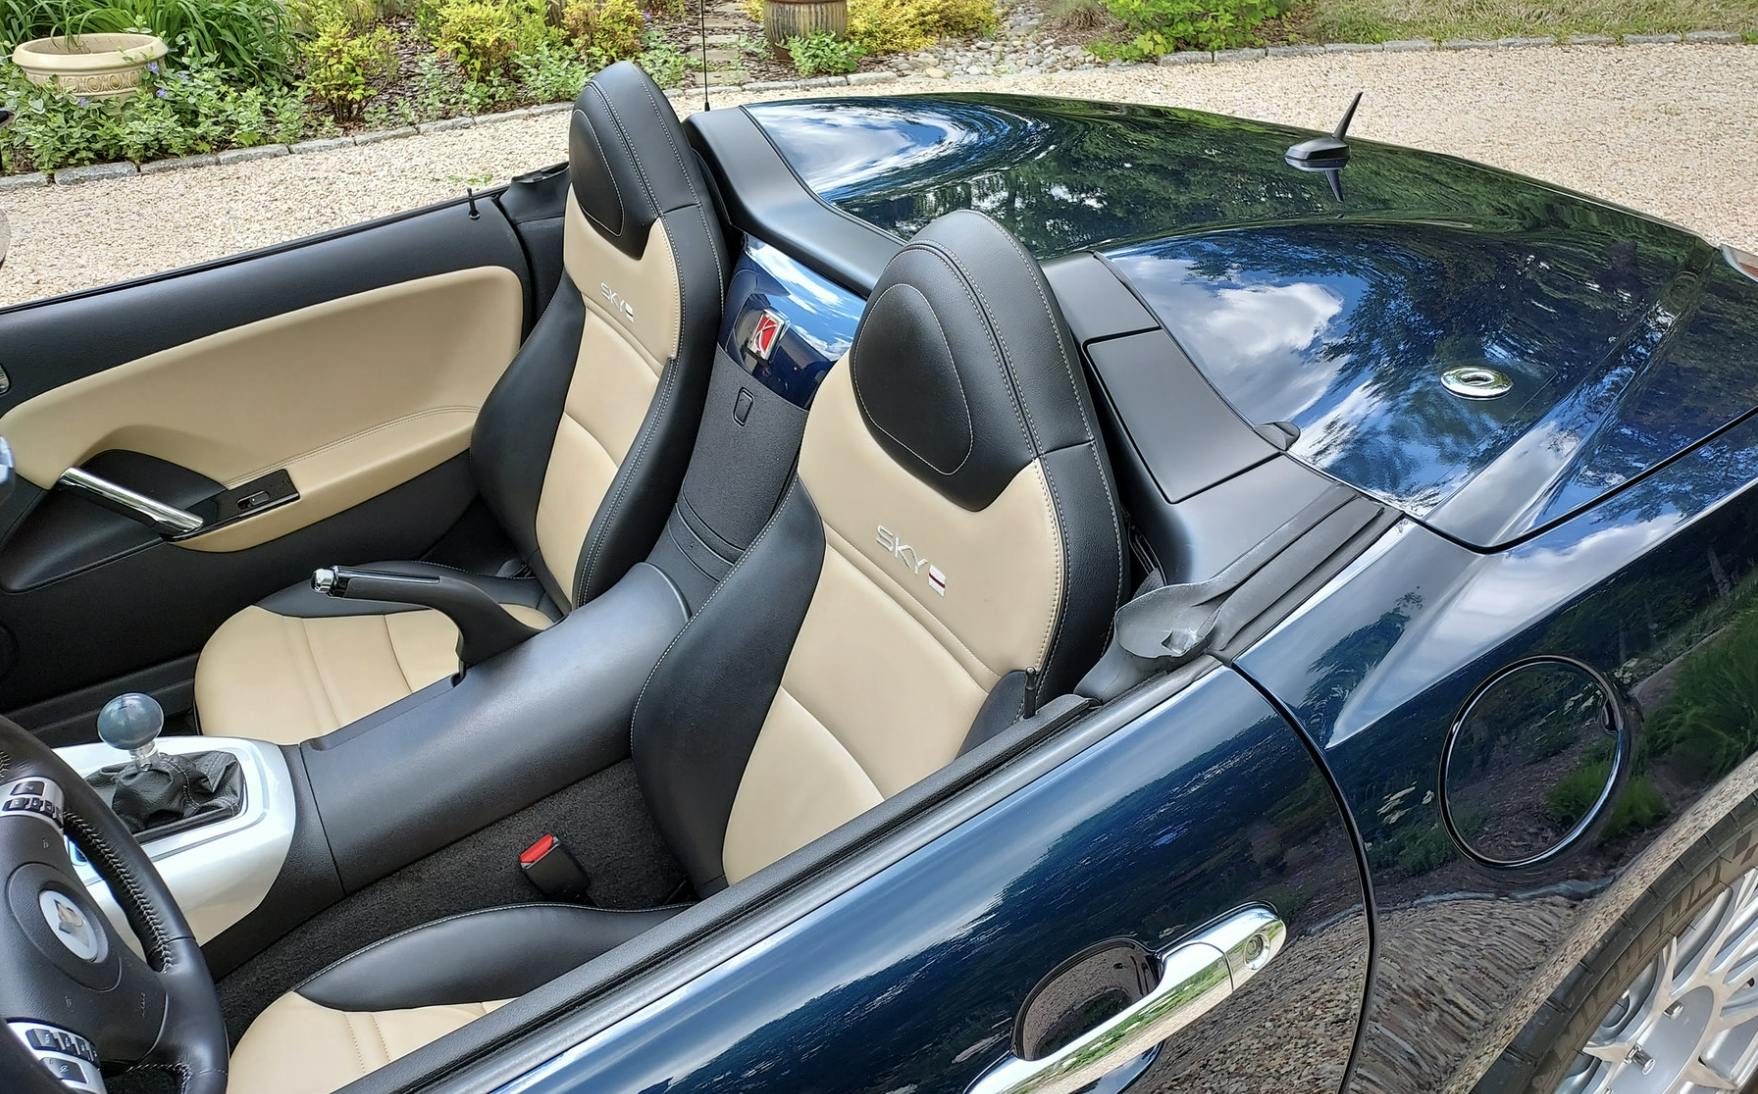 LS3 Saturn Sky Corvette interior